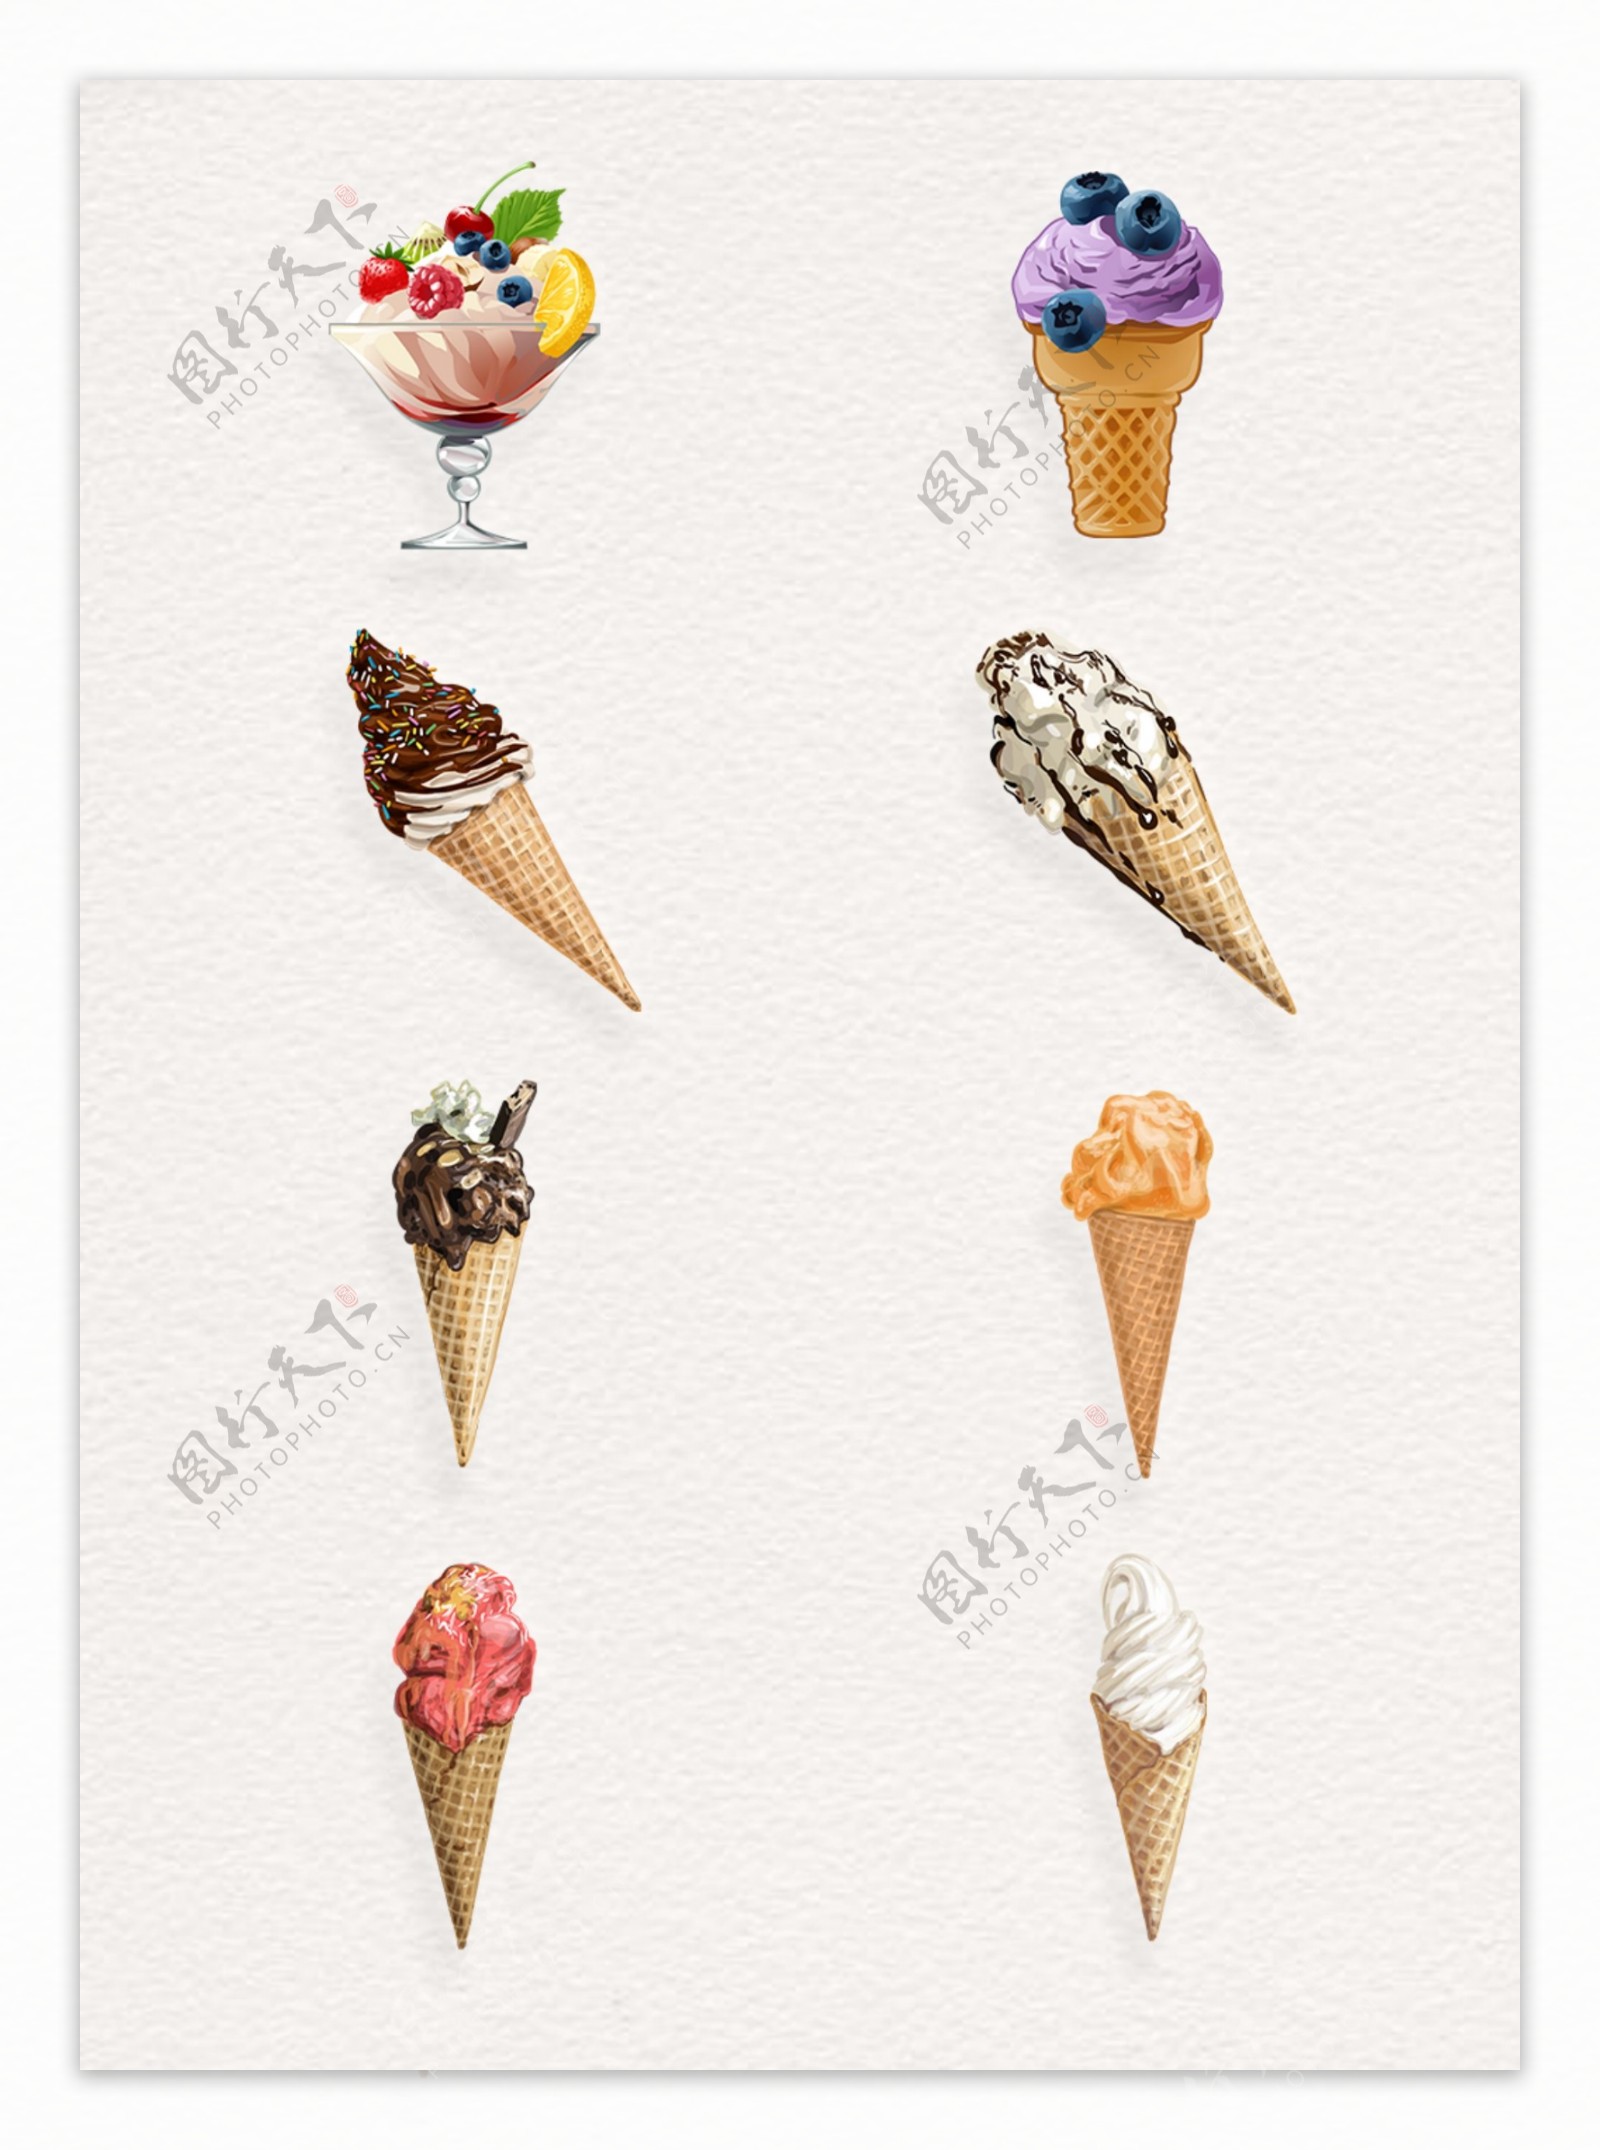 水彩绘冰淇淋png元素设计